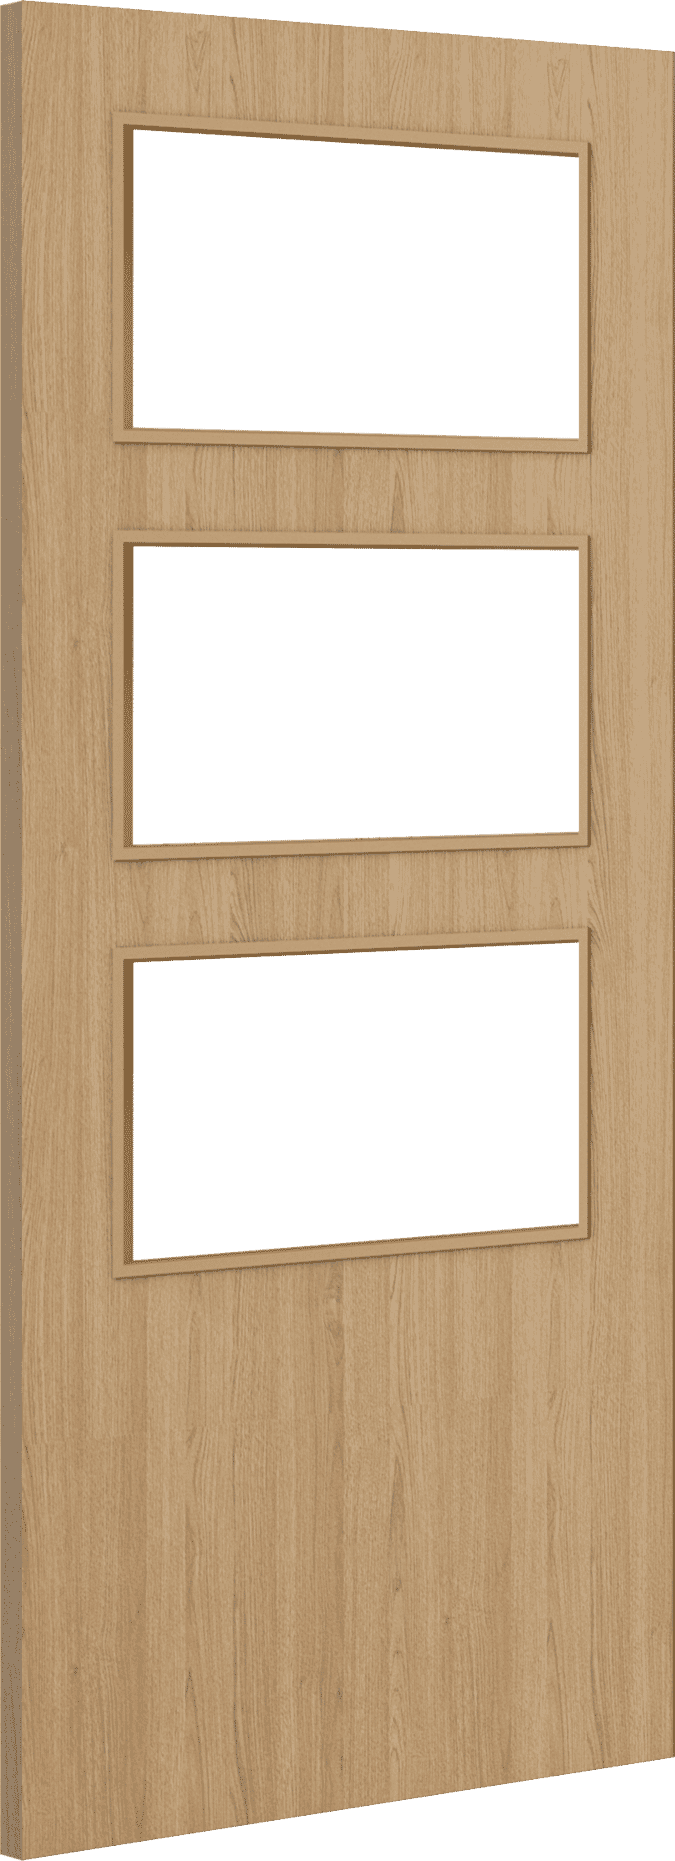 2032mm x 813mm x 44mm (32") Architectural Oak 03 Clear Glazed - Prefinished FD30 Fire Door Blank